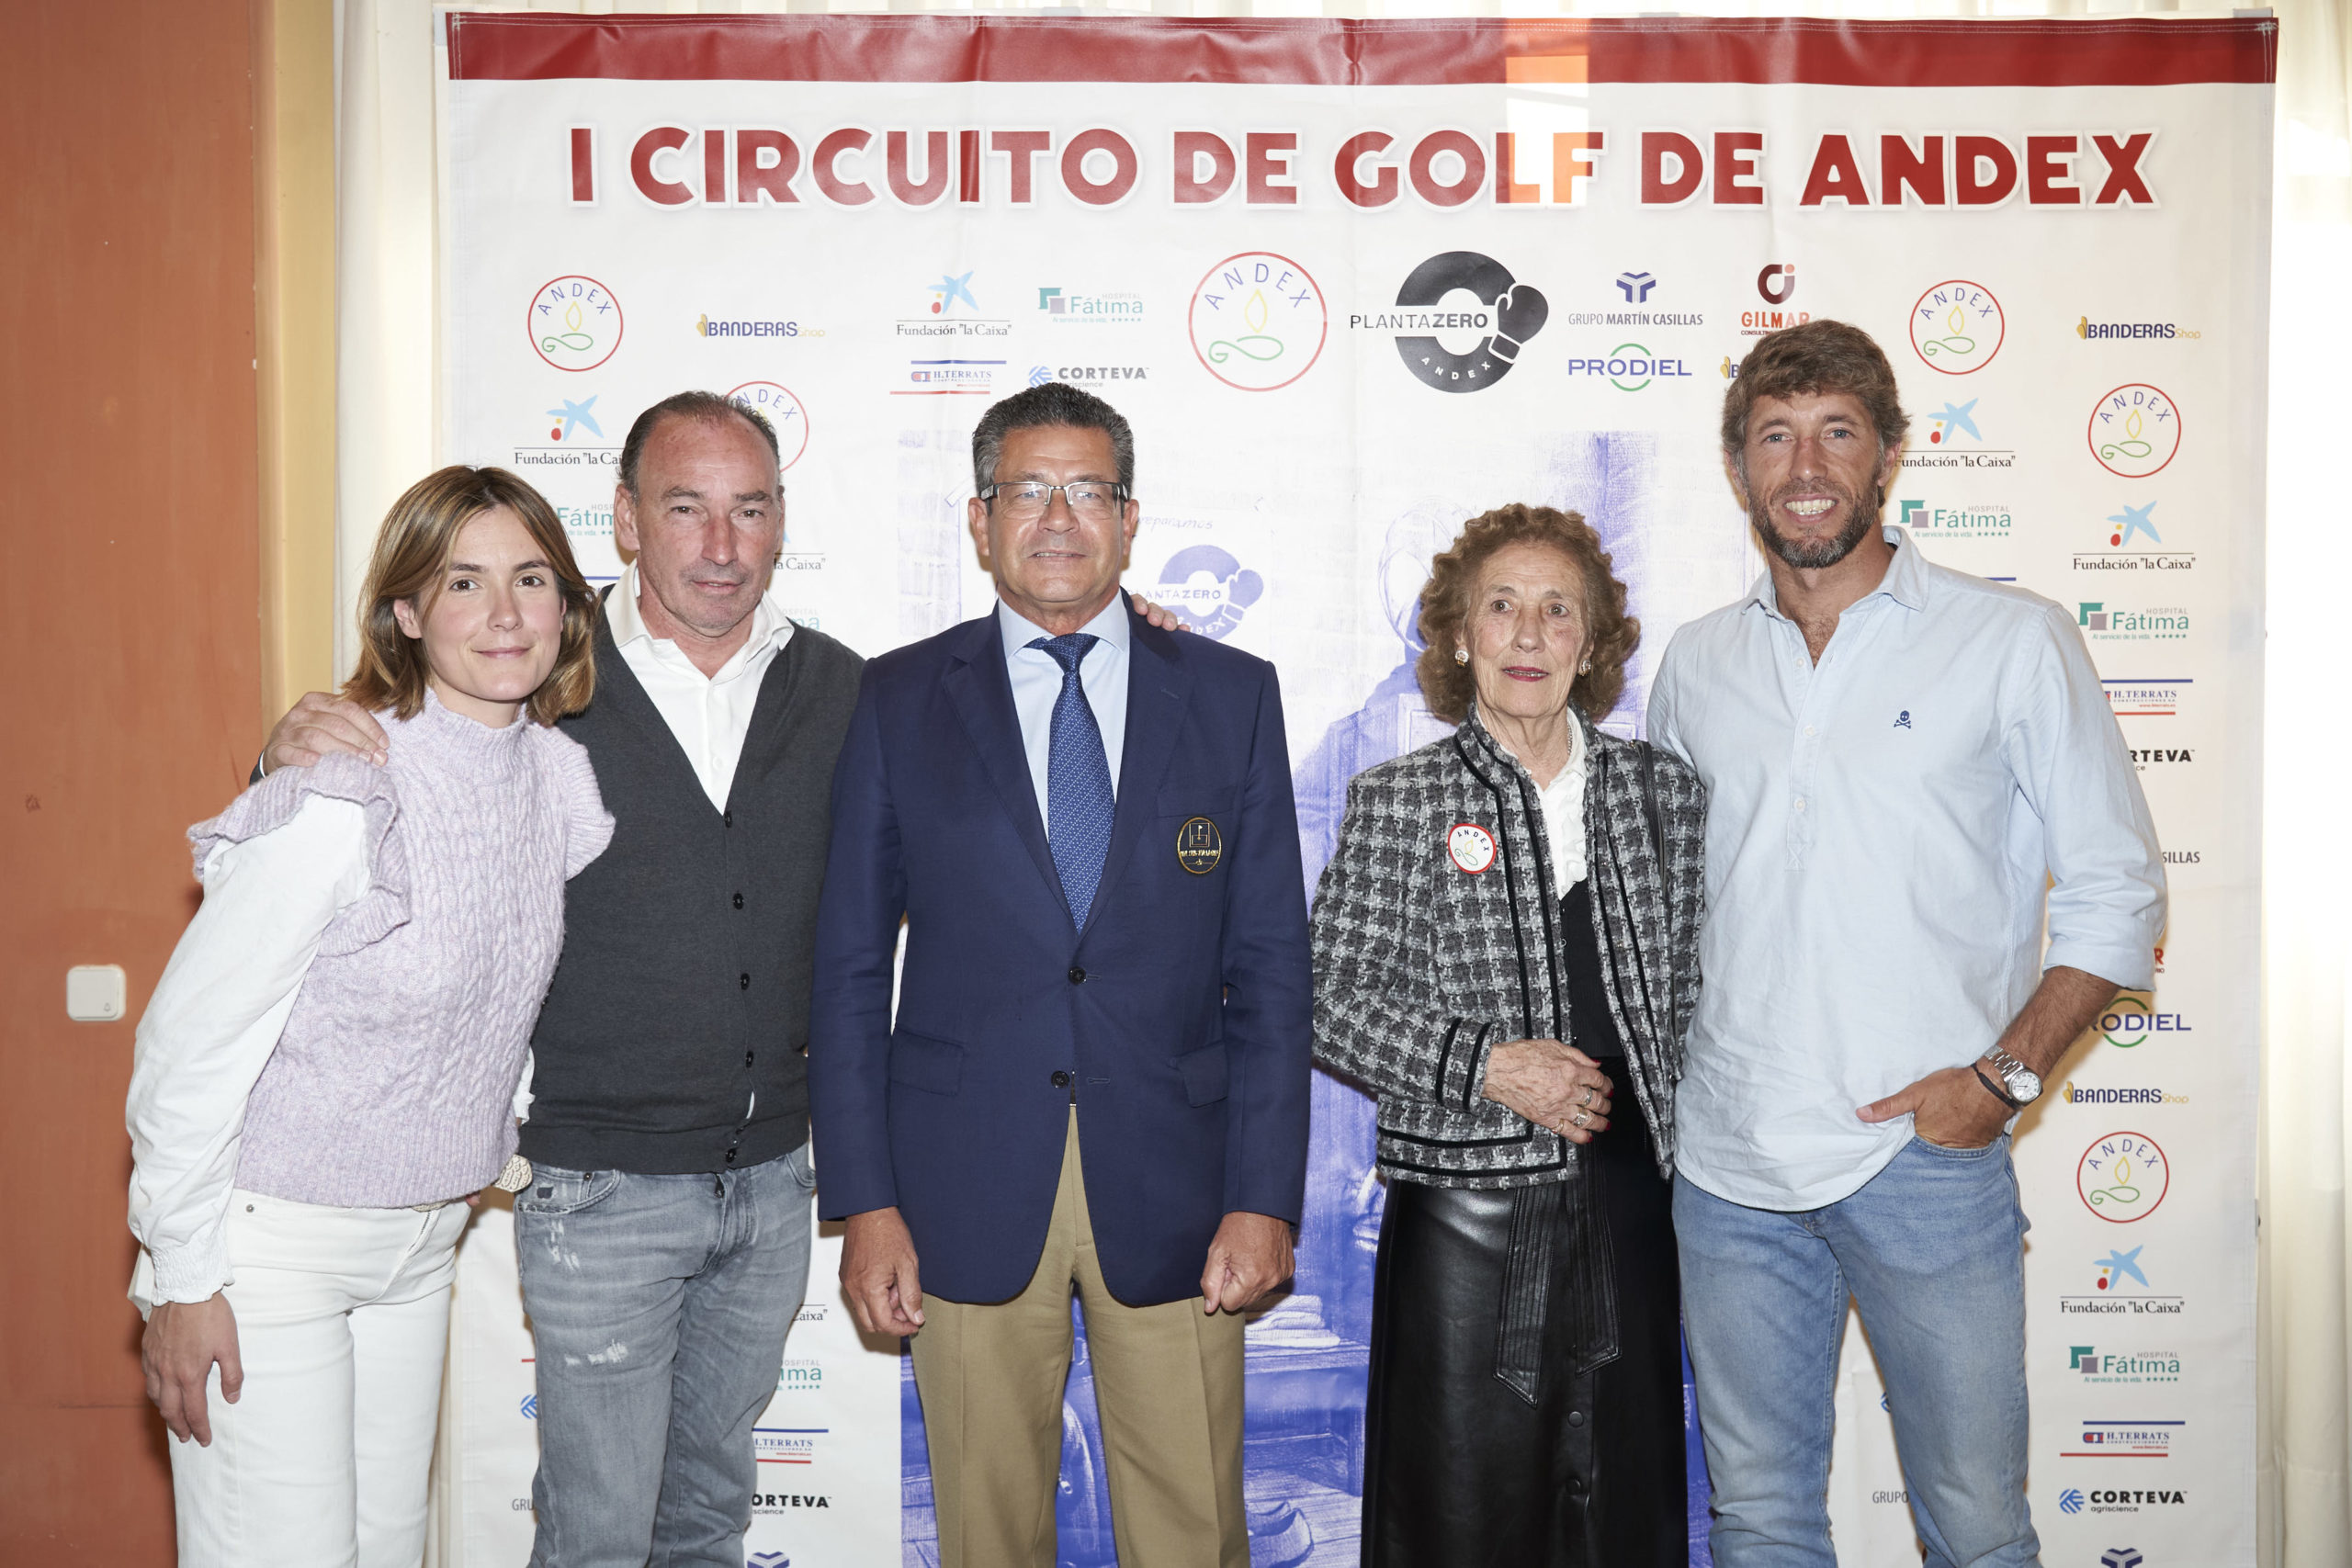 El Real Club Sevilla Golf celebra la ultima prueba del I Circuito Solidario a favor del proyecto Planta Zero de ANDEX